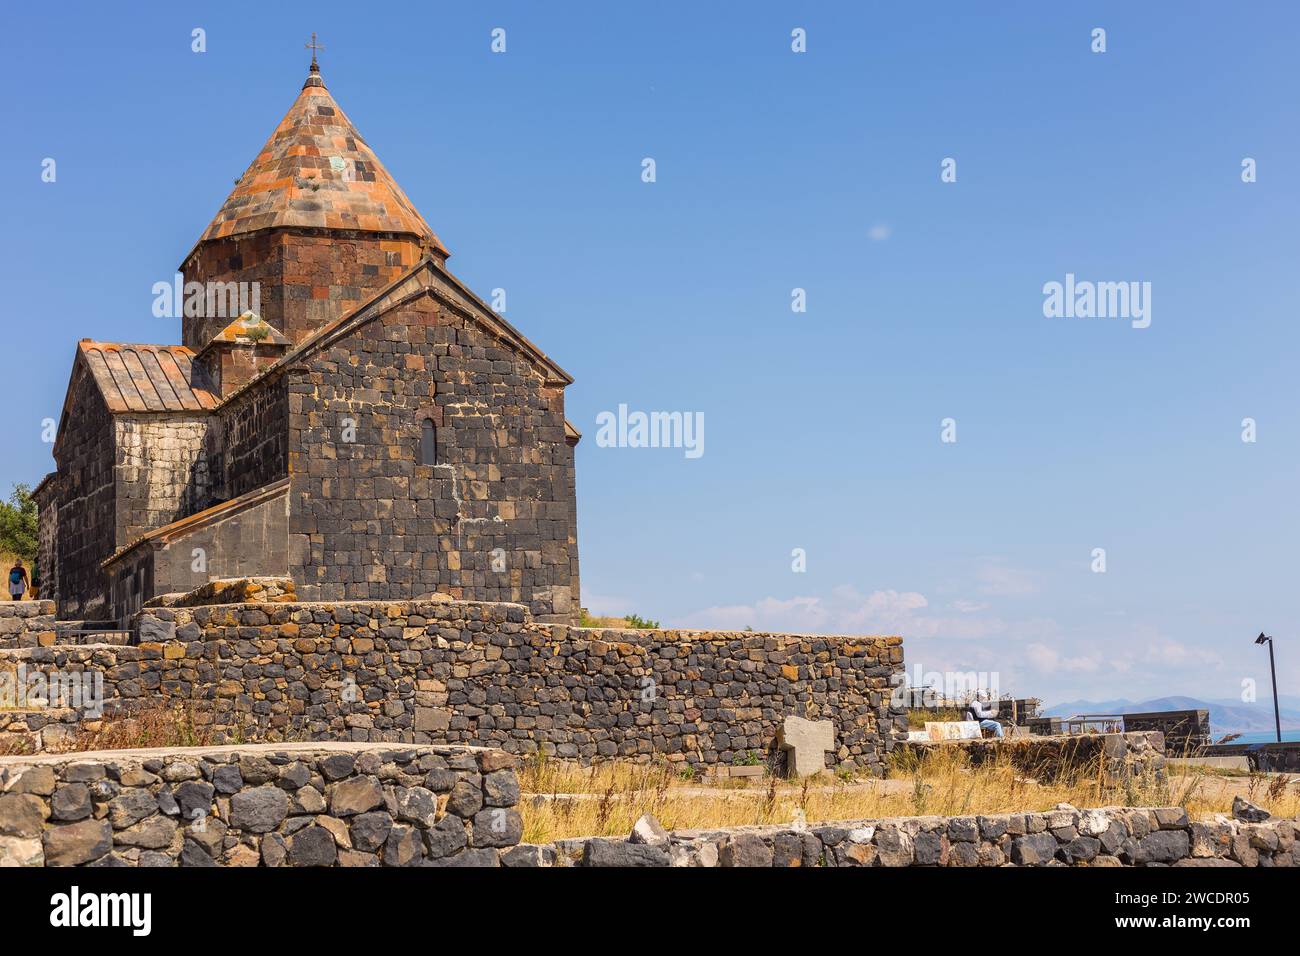 Sevanavank, Armenien - 2. September 2019: Blick auf die Sevanavank, Klosteranlage am Ufer des Sewan-Sees. Surp Arakelots, was den Heiligen Apo bedeutet Stockfoto